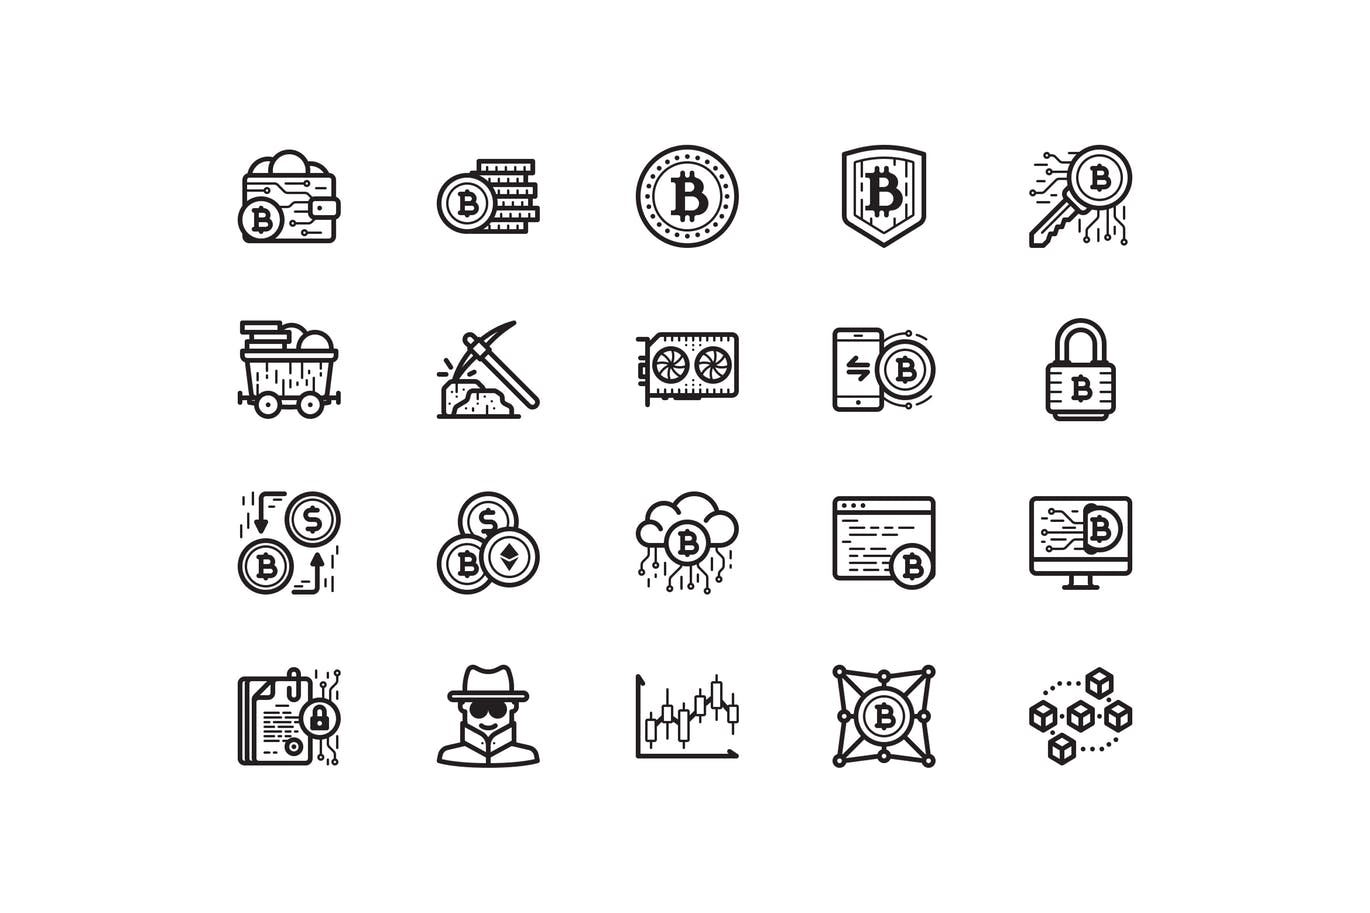 Twenty bitcoin icons